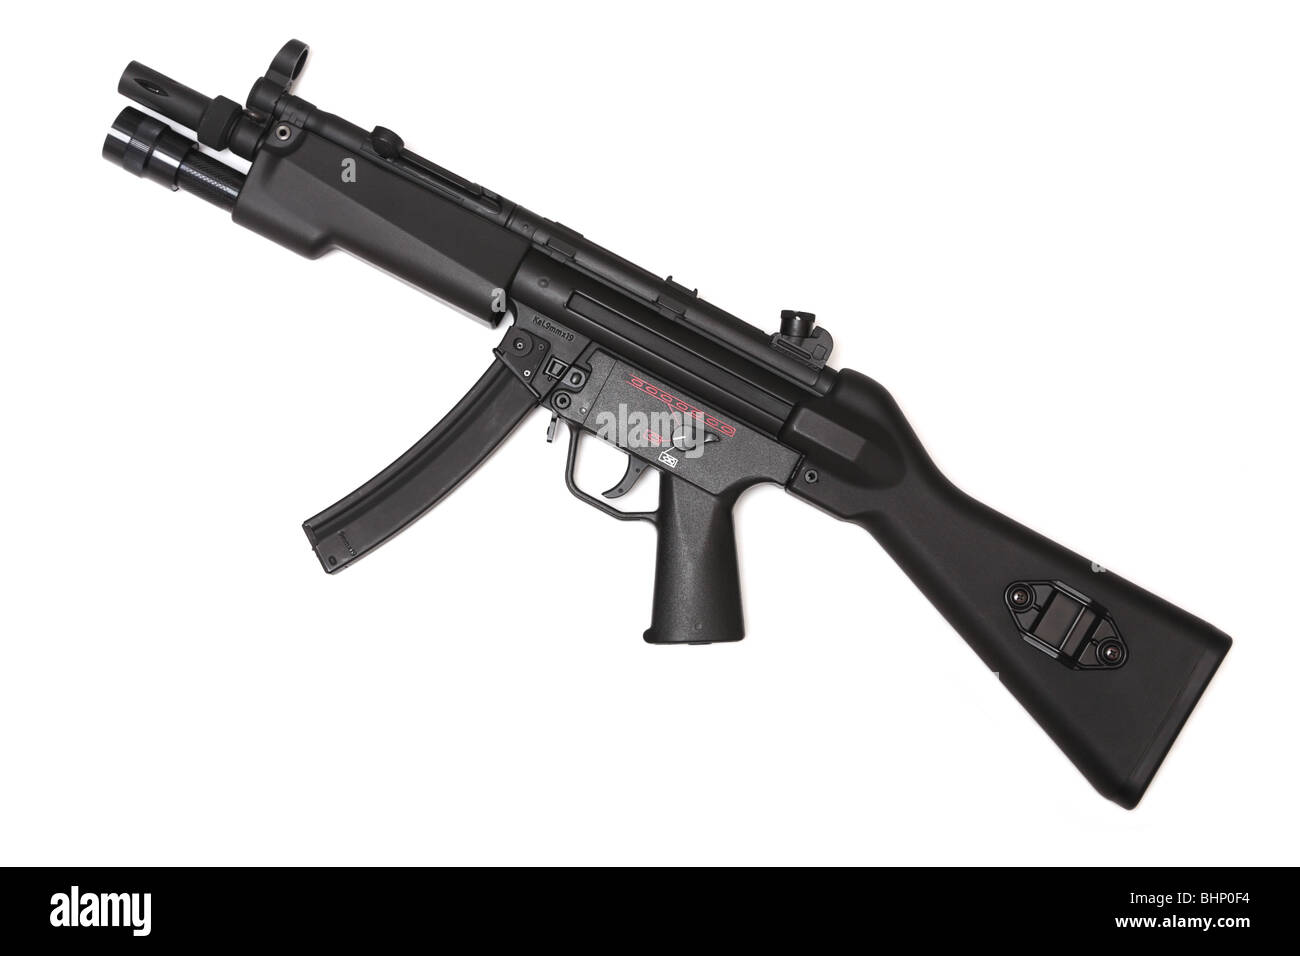 Waffe-Serie. MP5 - moderne Maschinenpistole mit taktischen Flashligt. Seitenansicht. Isoliert auf weißem Hintergrund. Stockfoto